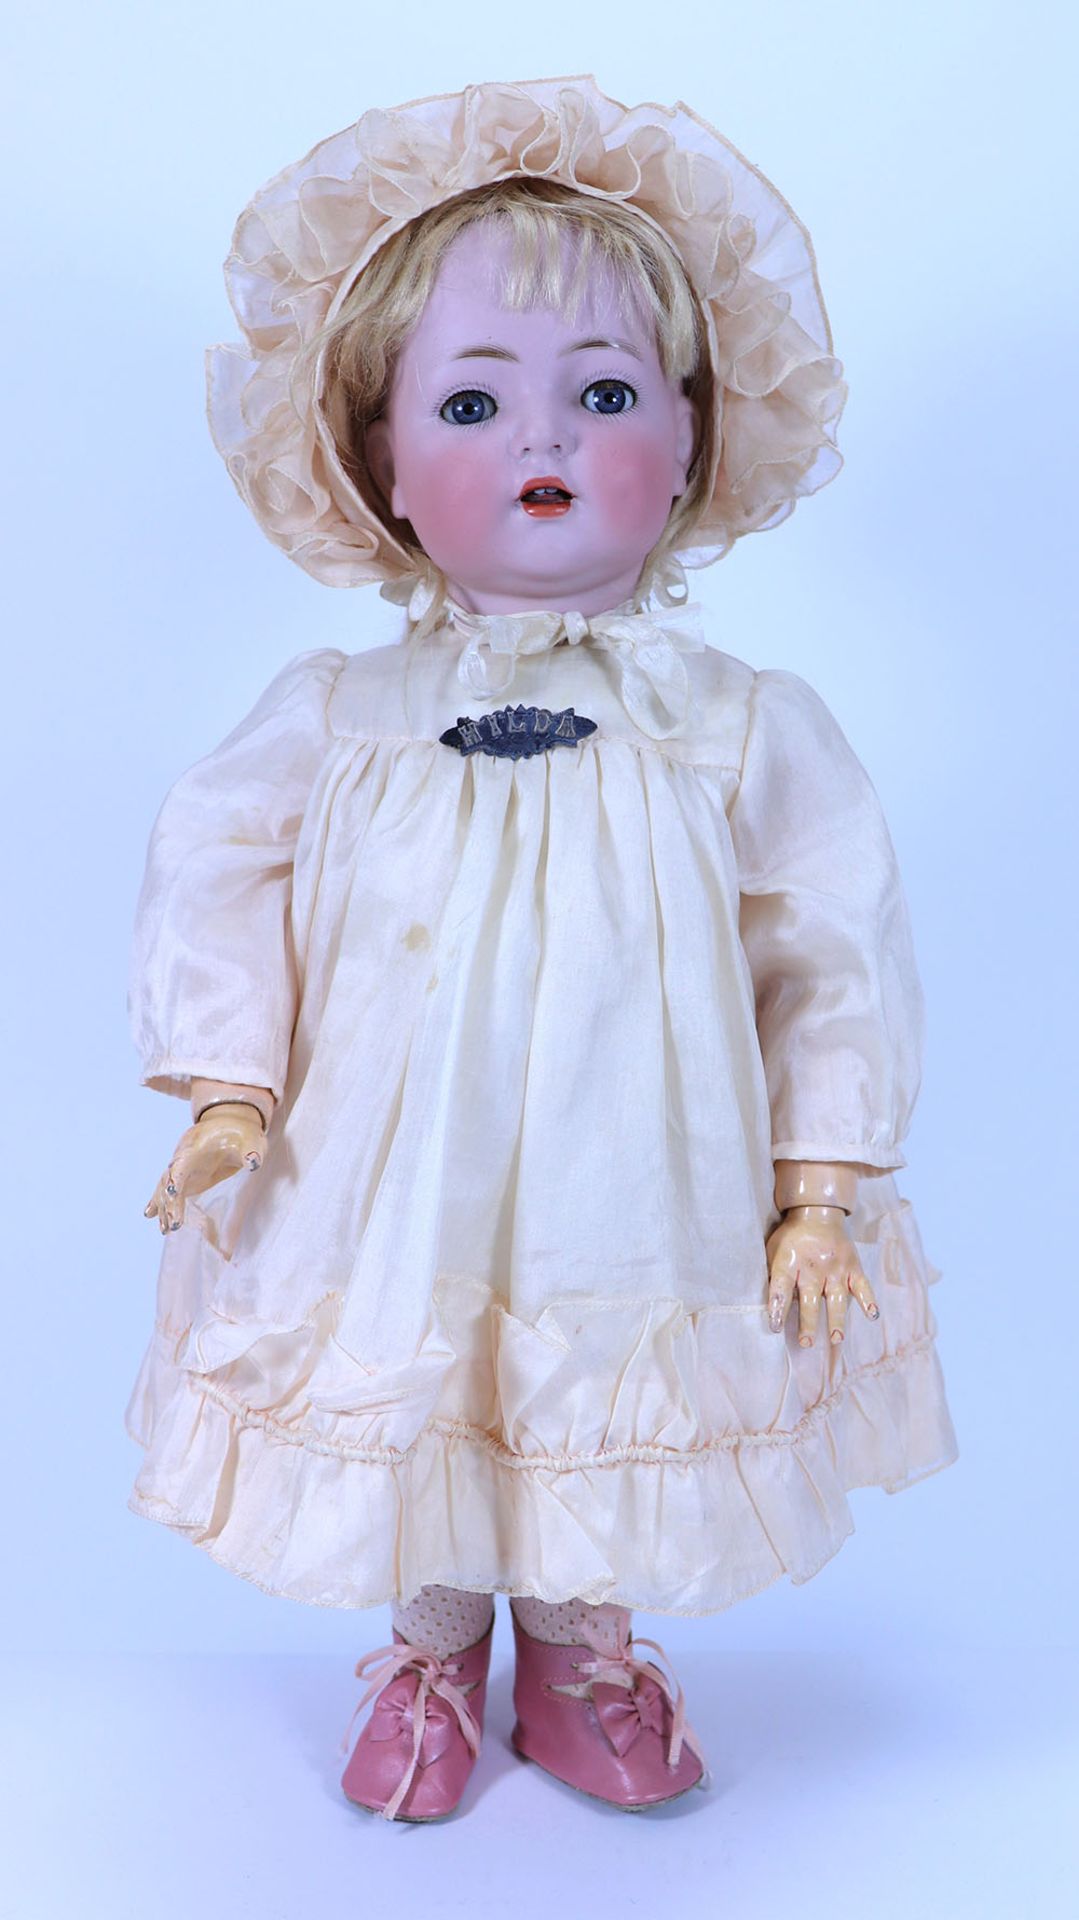 A Kammer & Reinhardt 121 bisque head doll, German circa 1910,